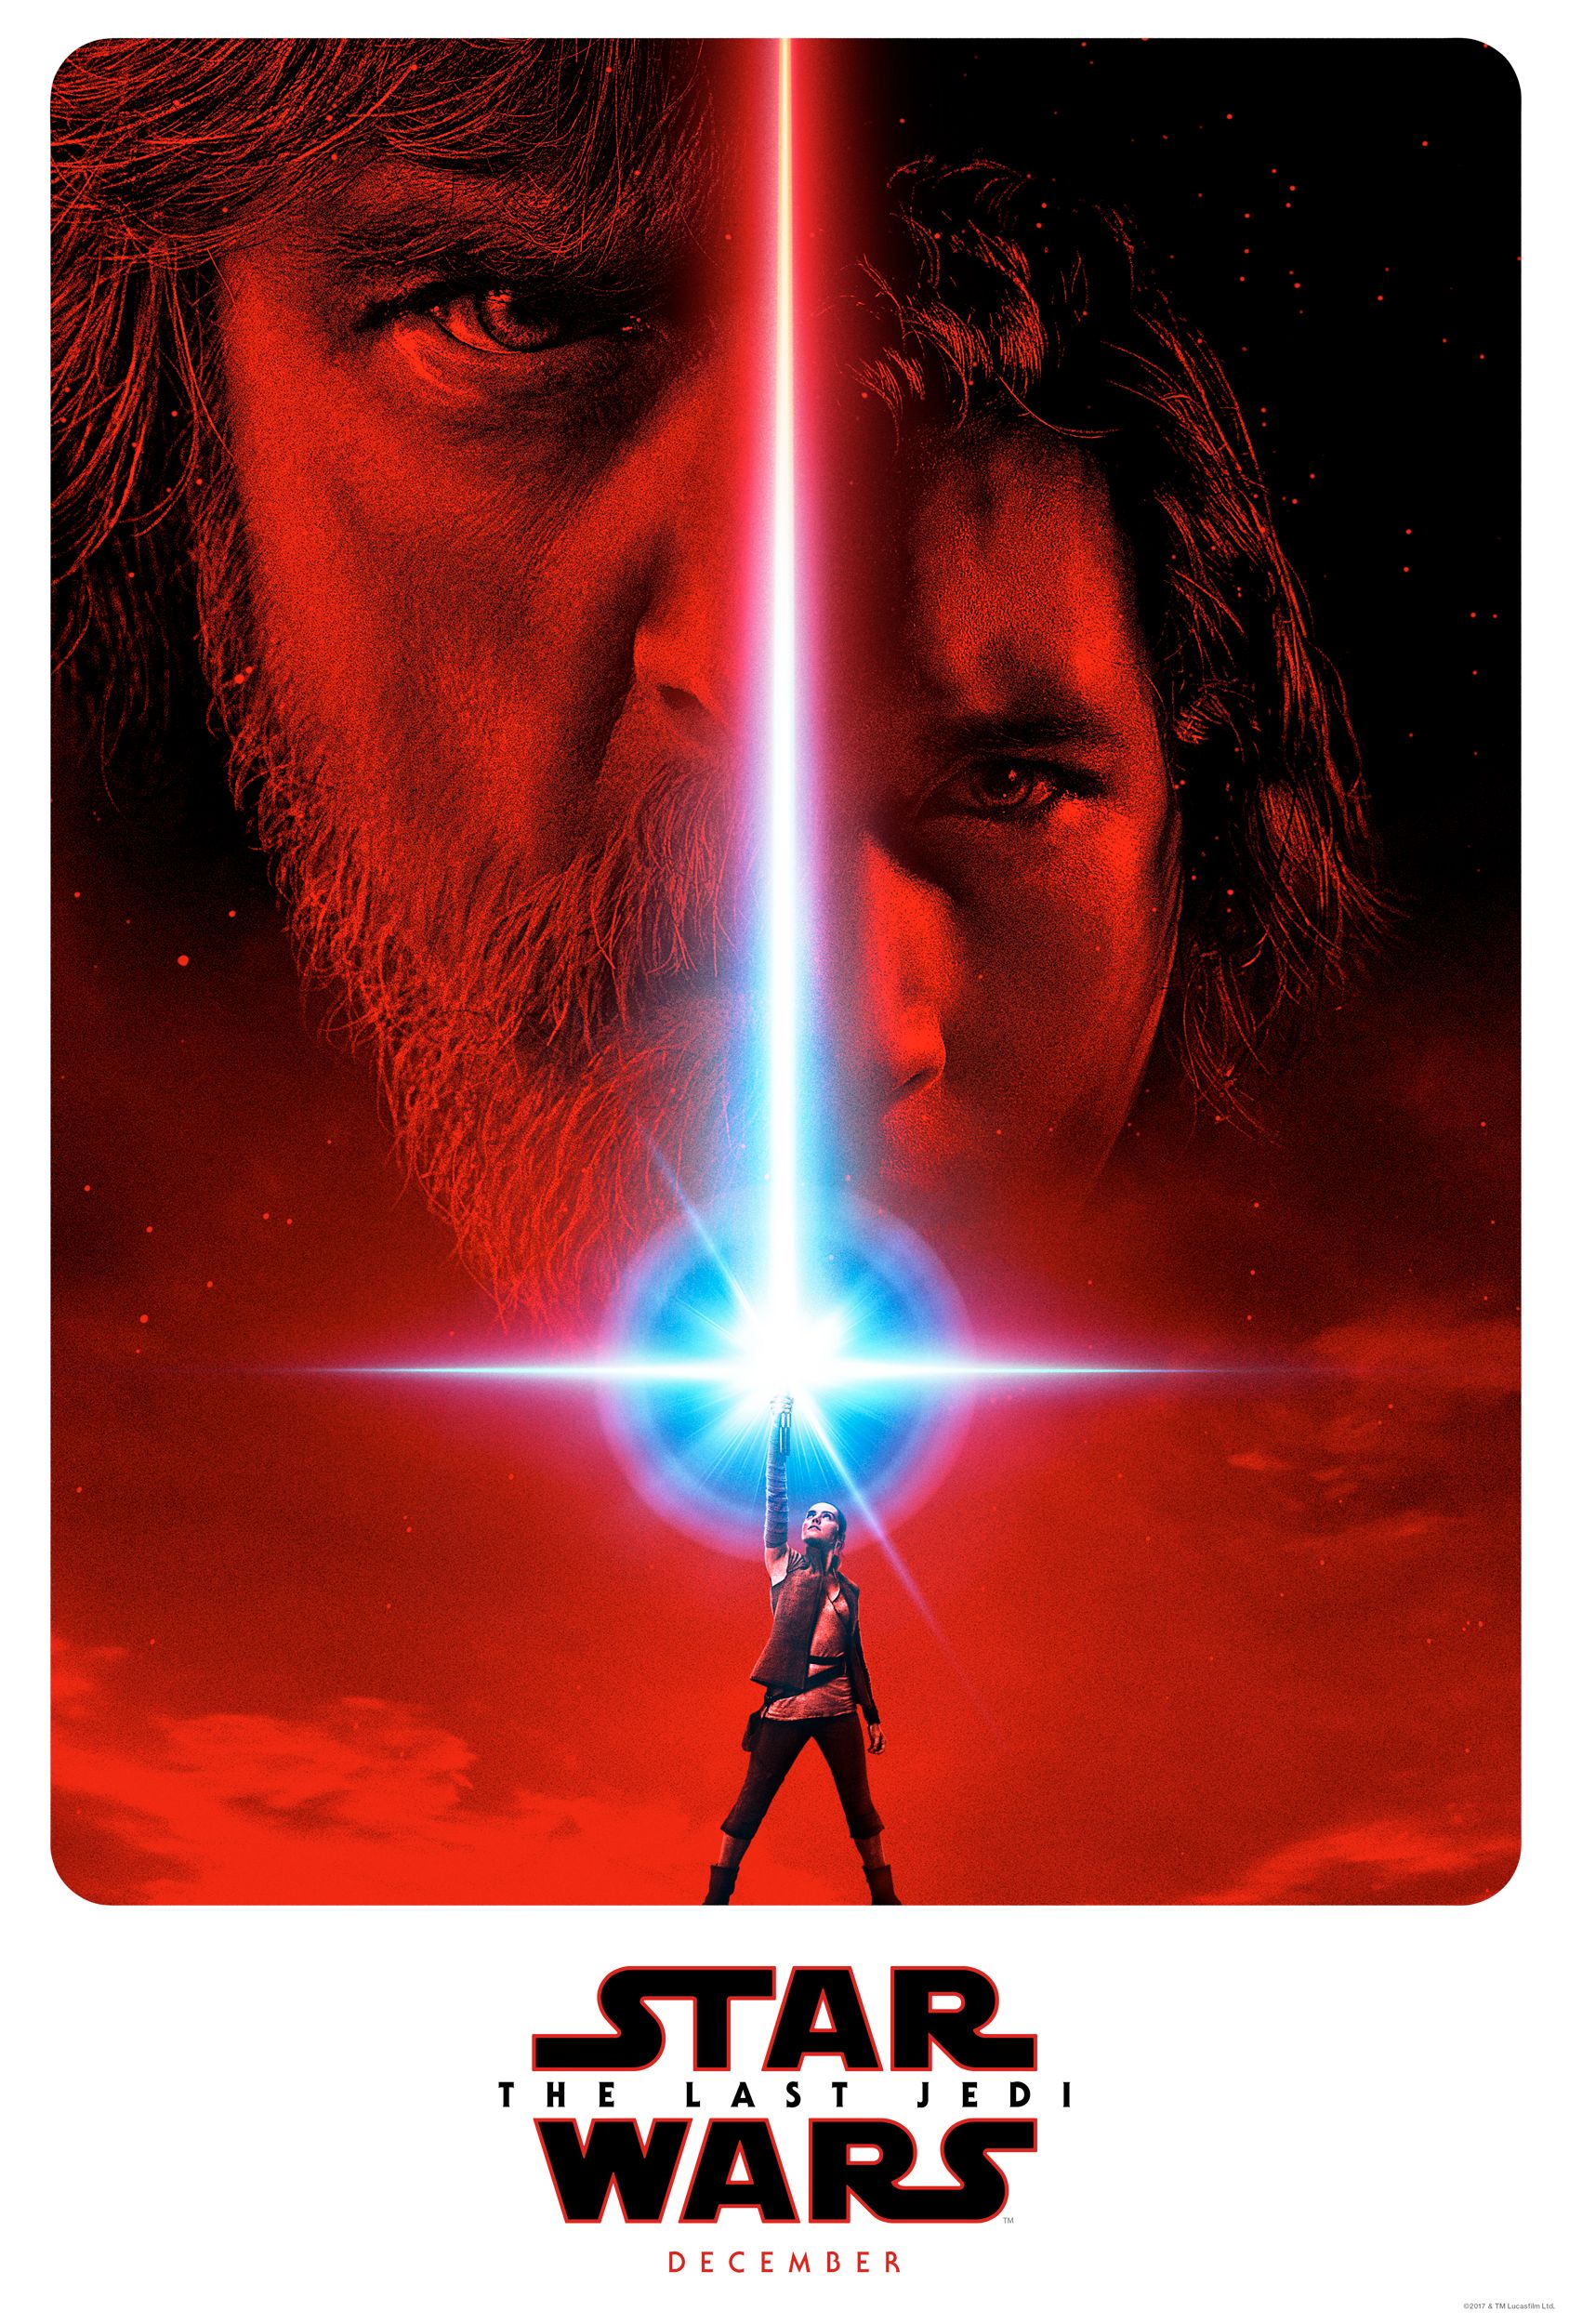 Star Wars 8 The Last Jedi Poster